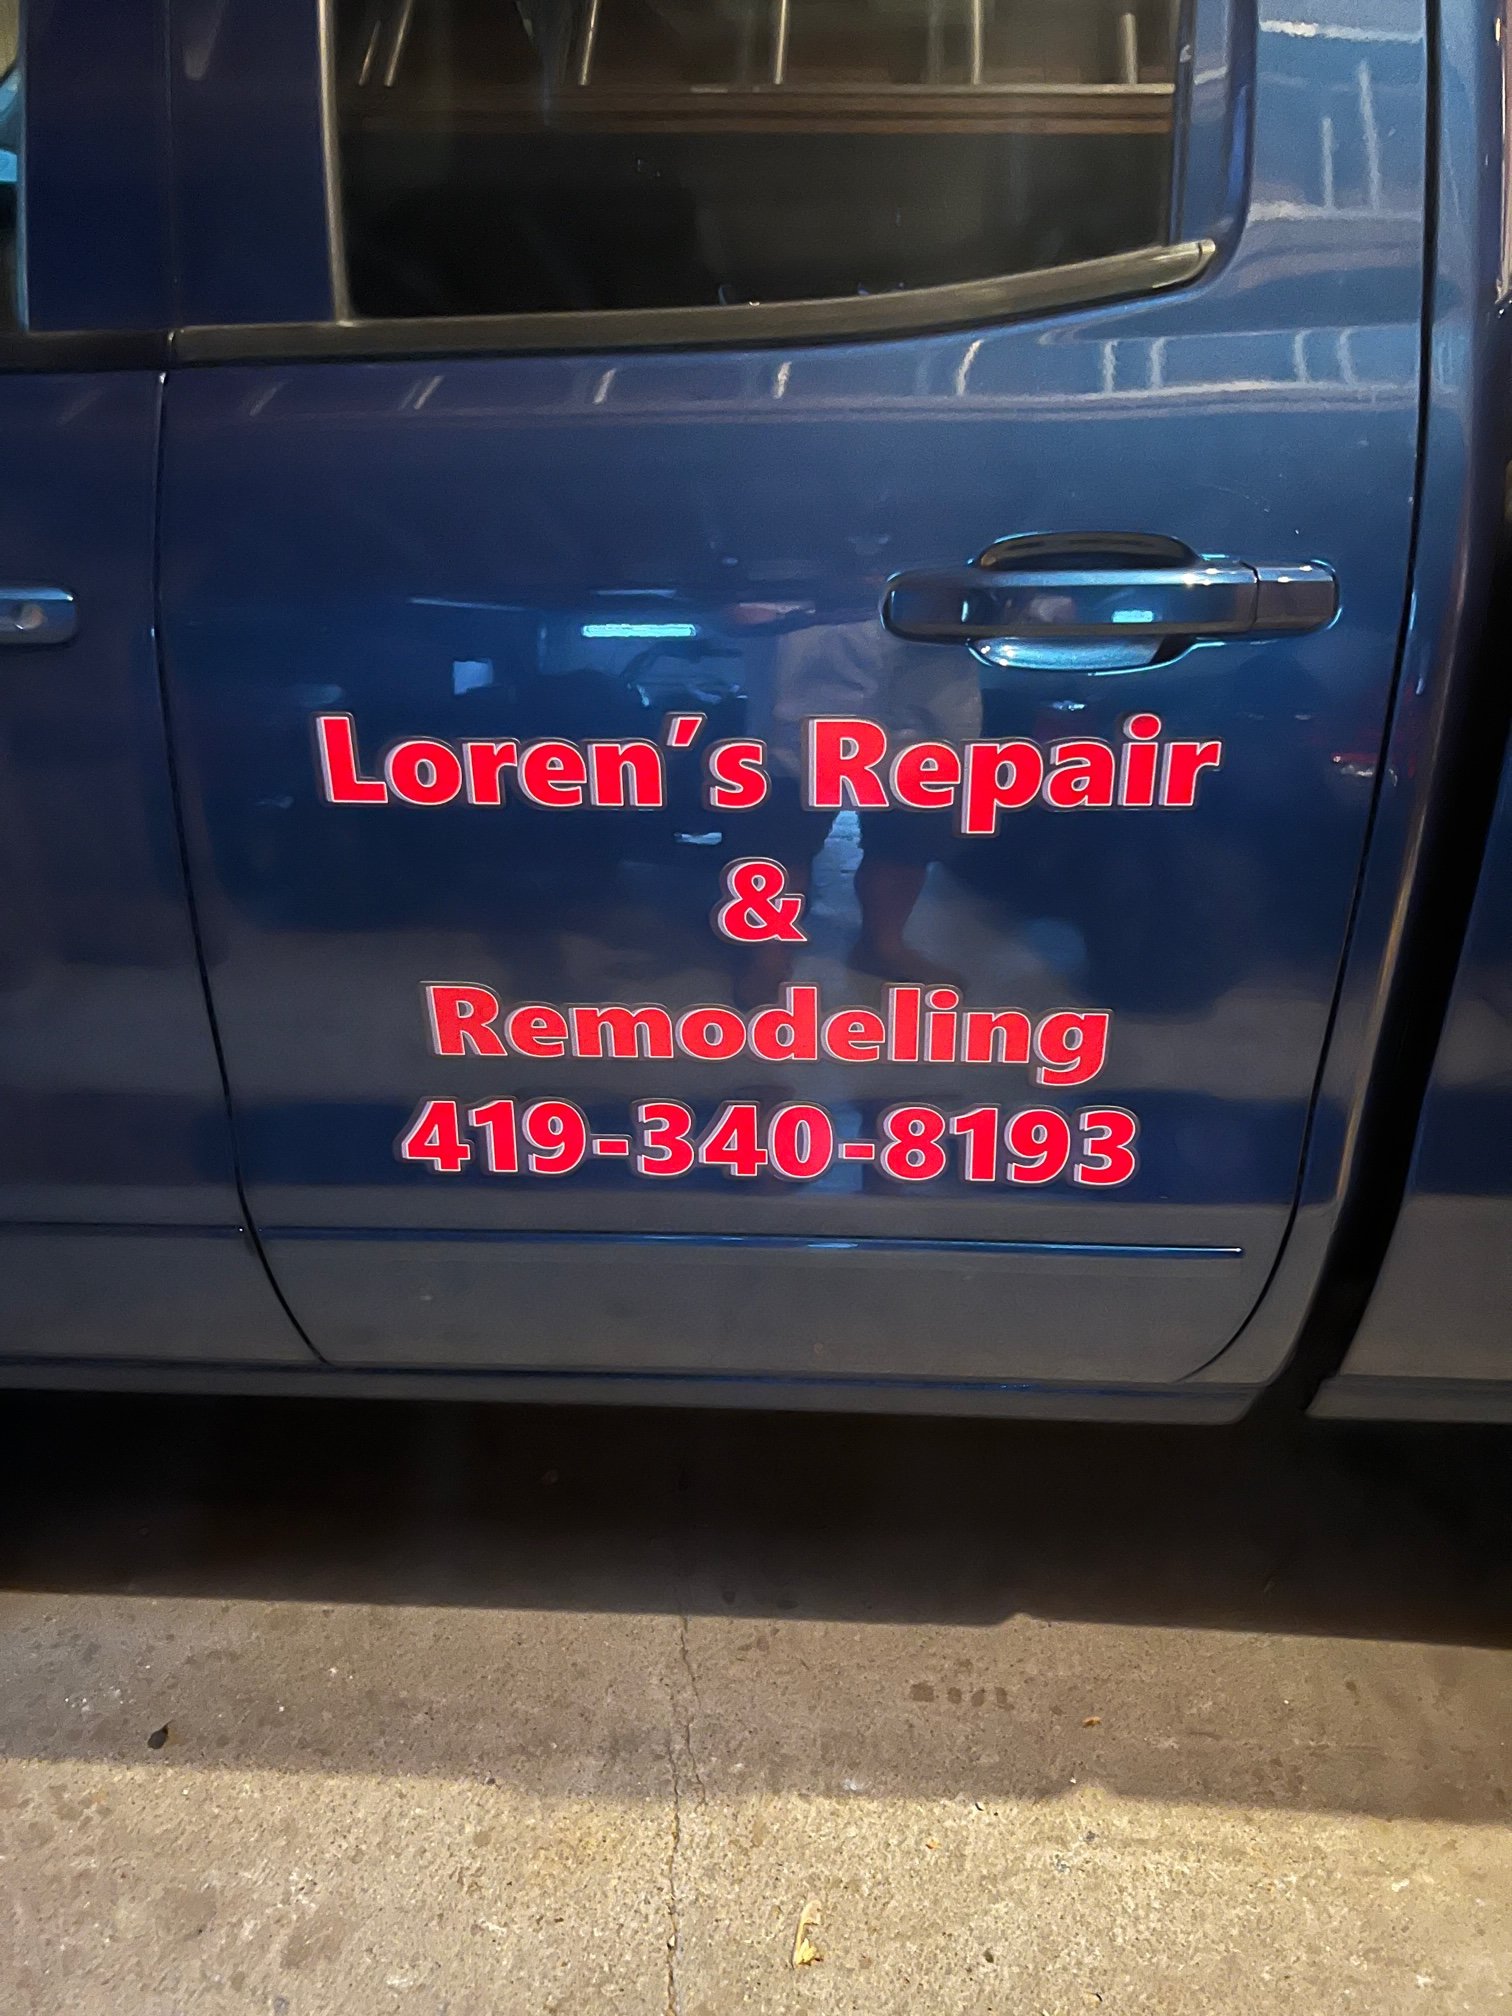 Loren's Repair & Remodeling Logo